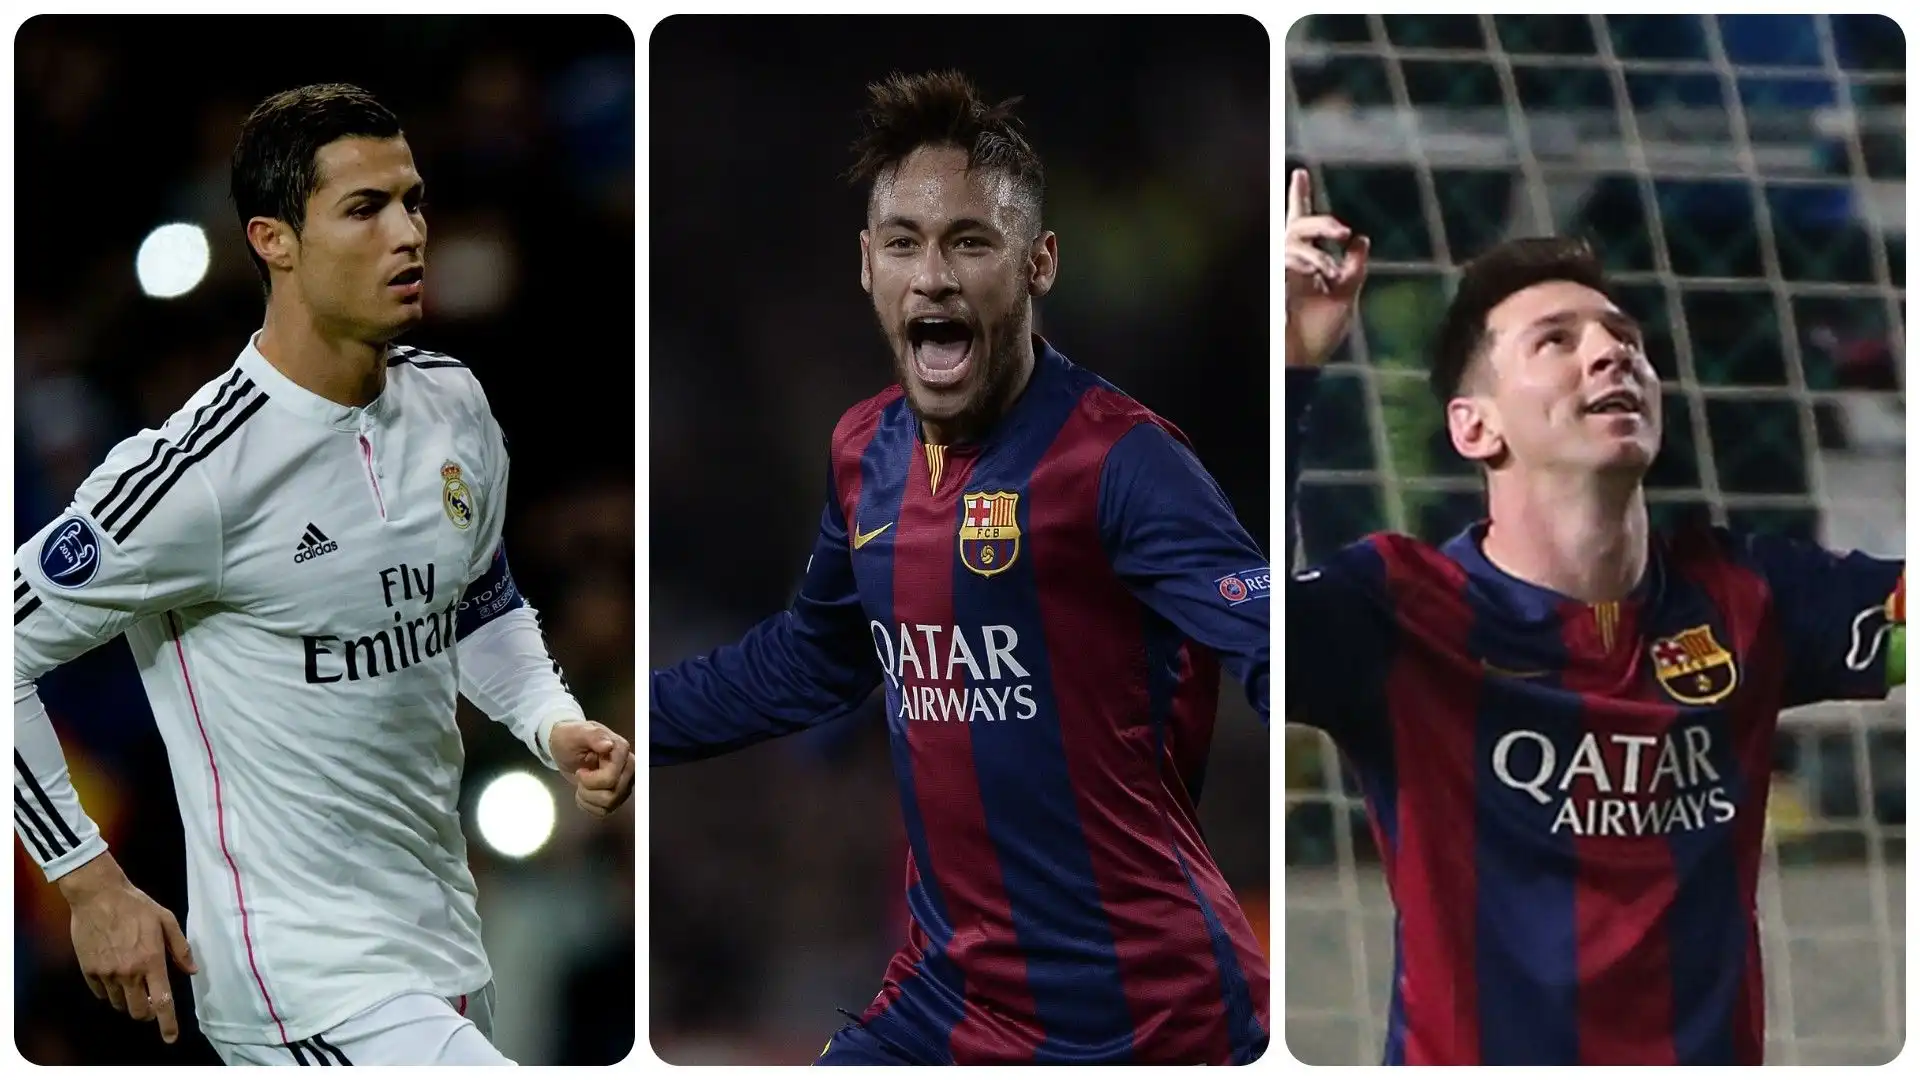 2014/15 Cristiano Ronaldo (Real Madrid) 10 gol in 12 partite, Neymar (Barcellona) 10 gol in 12 presenze, Lionel Messi (Barcellona) 10 gol in 13 presenze